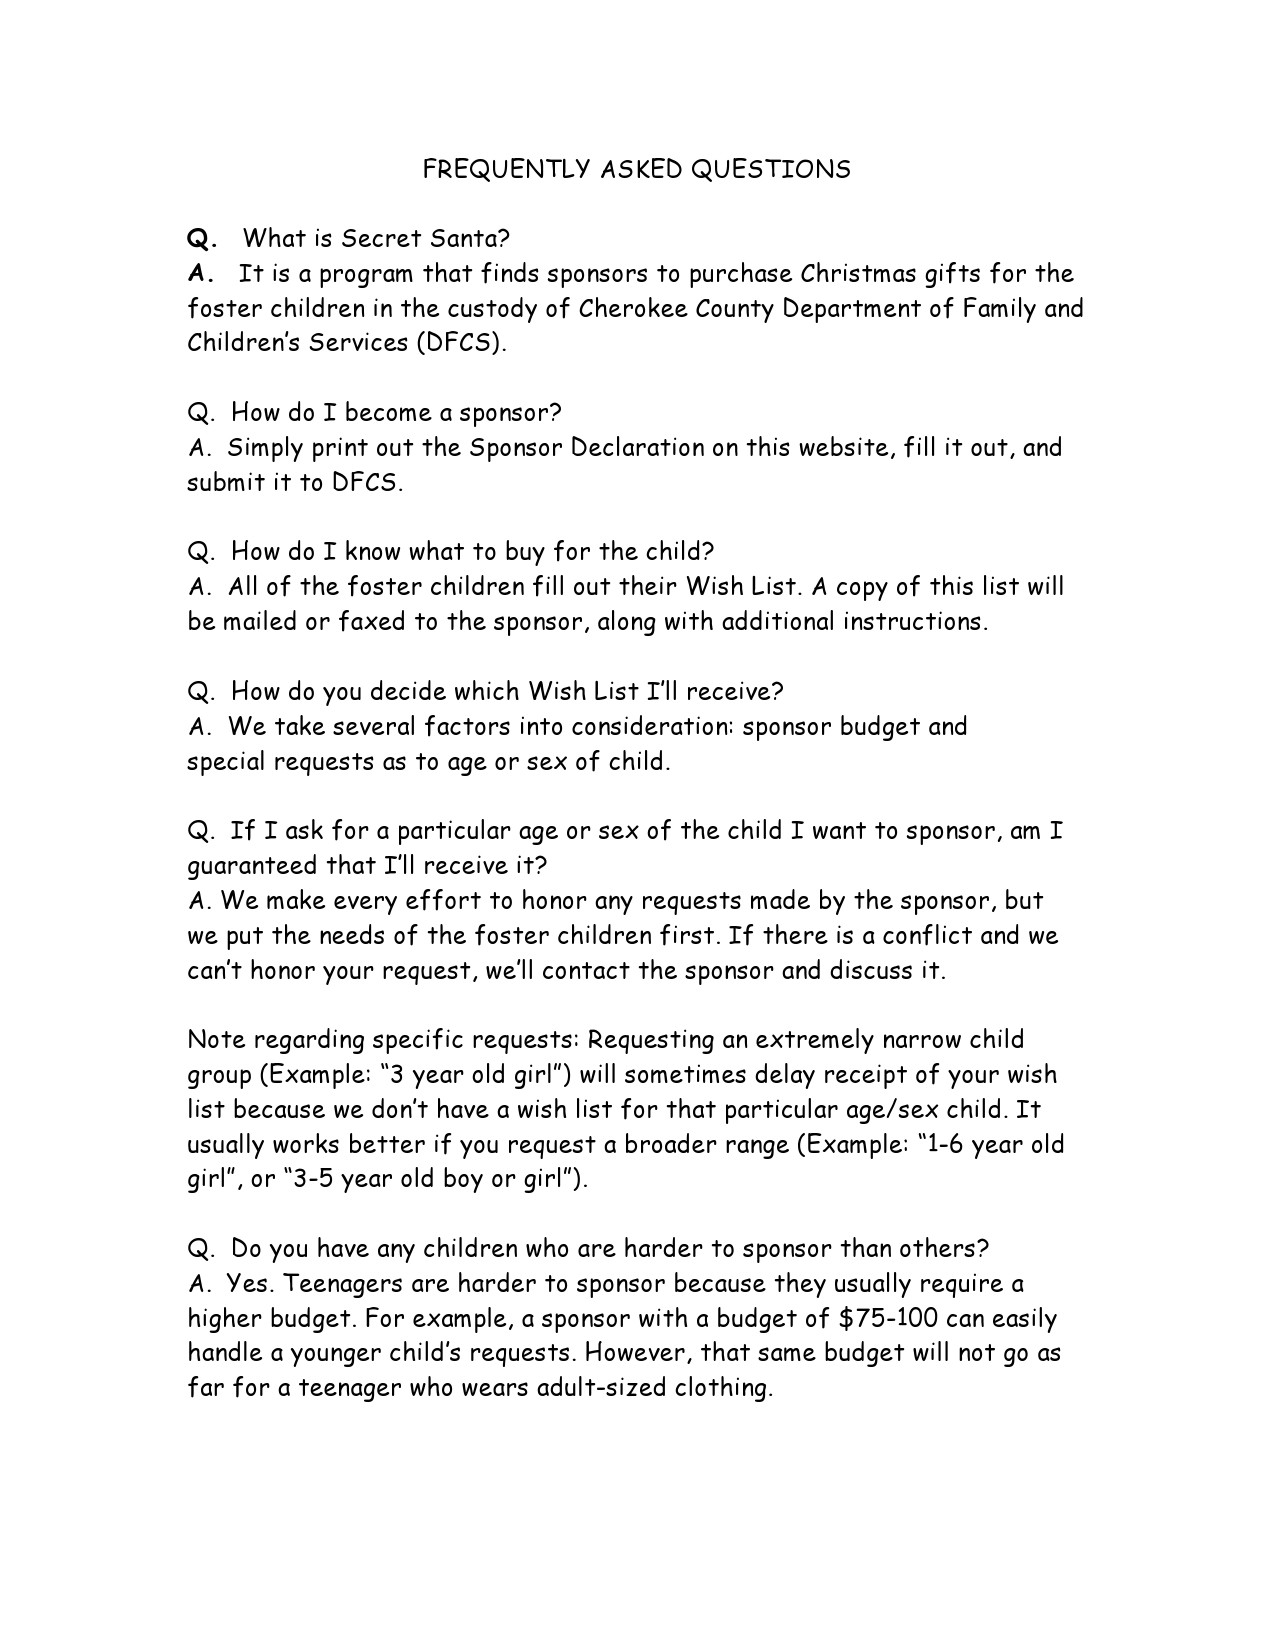 Free secret santa questionnaire 05